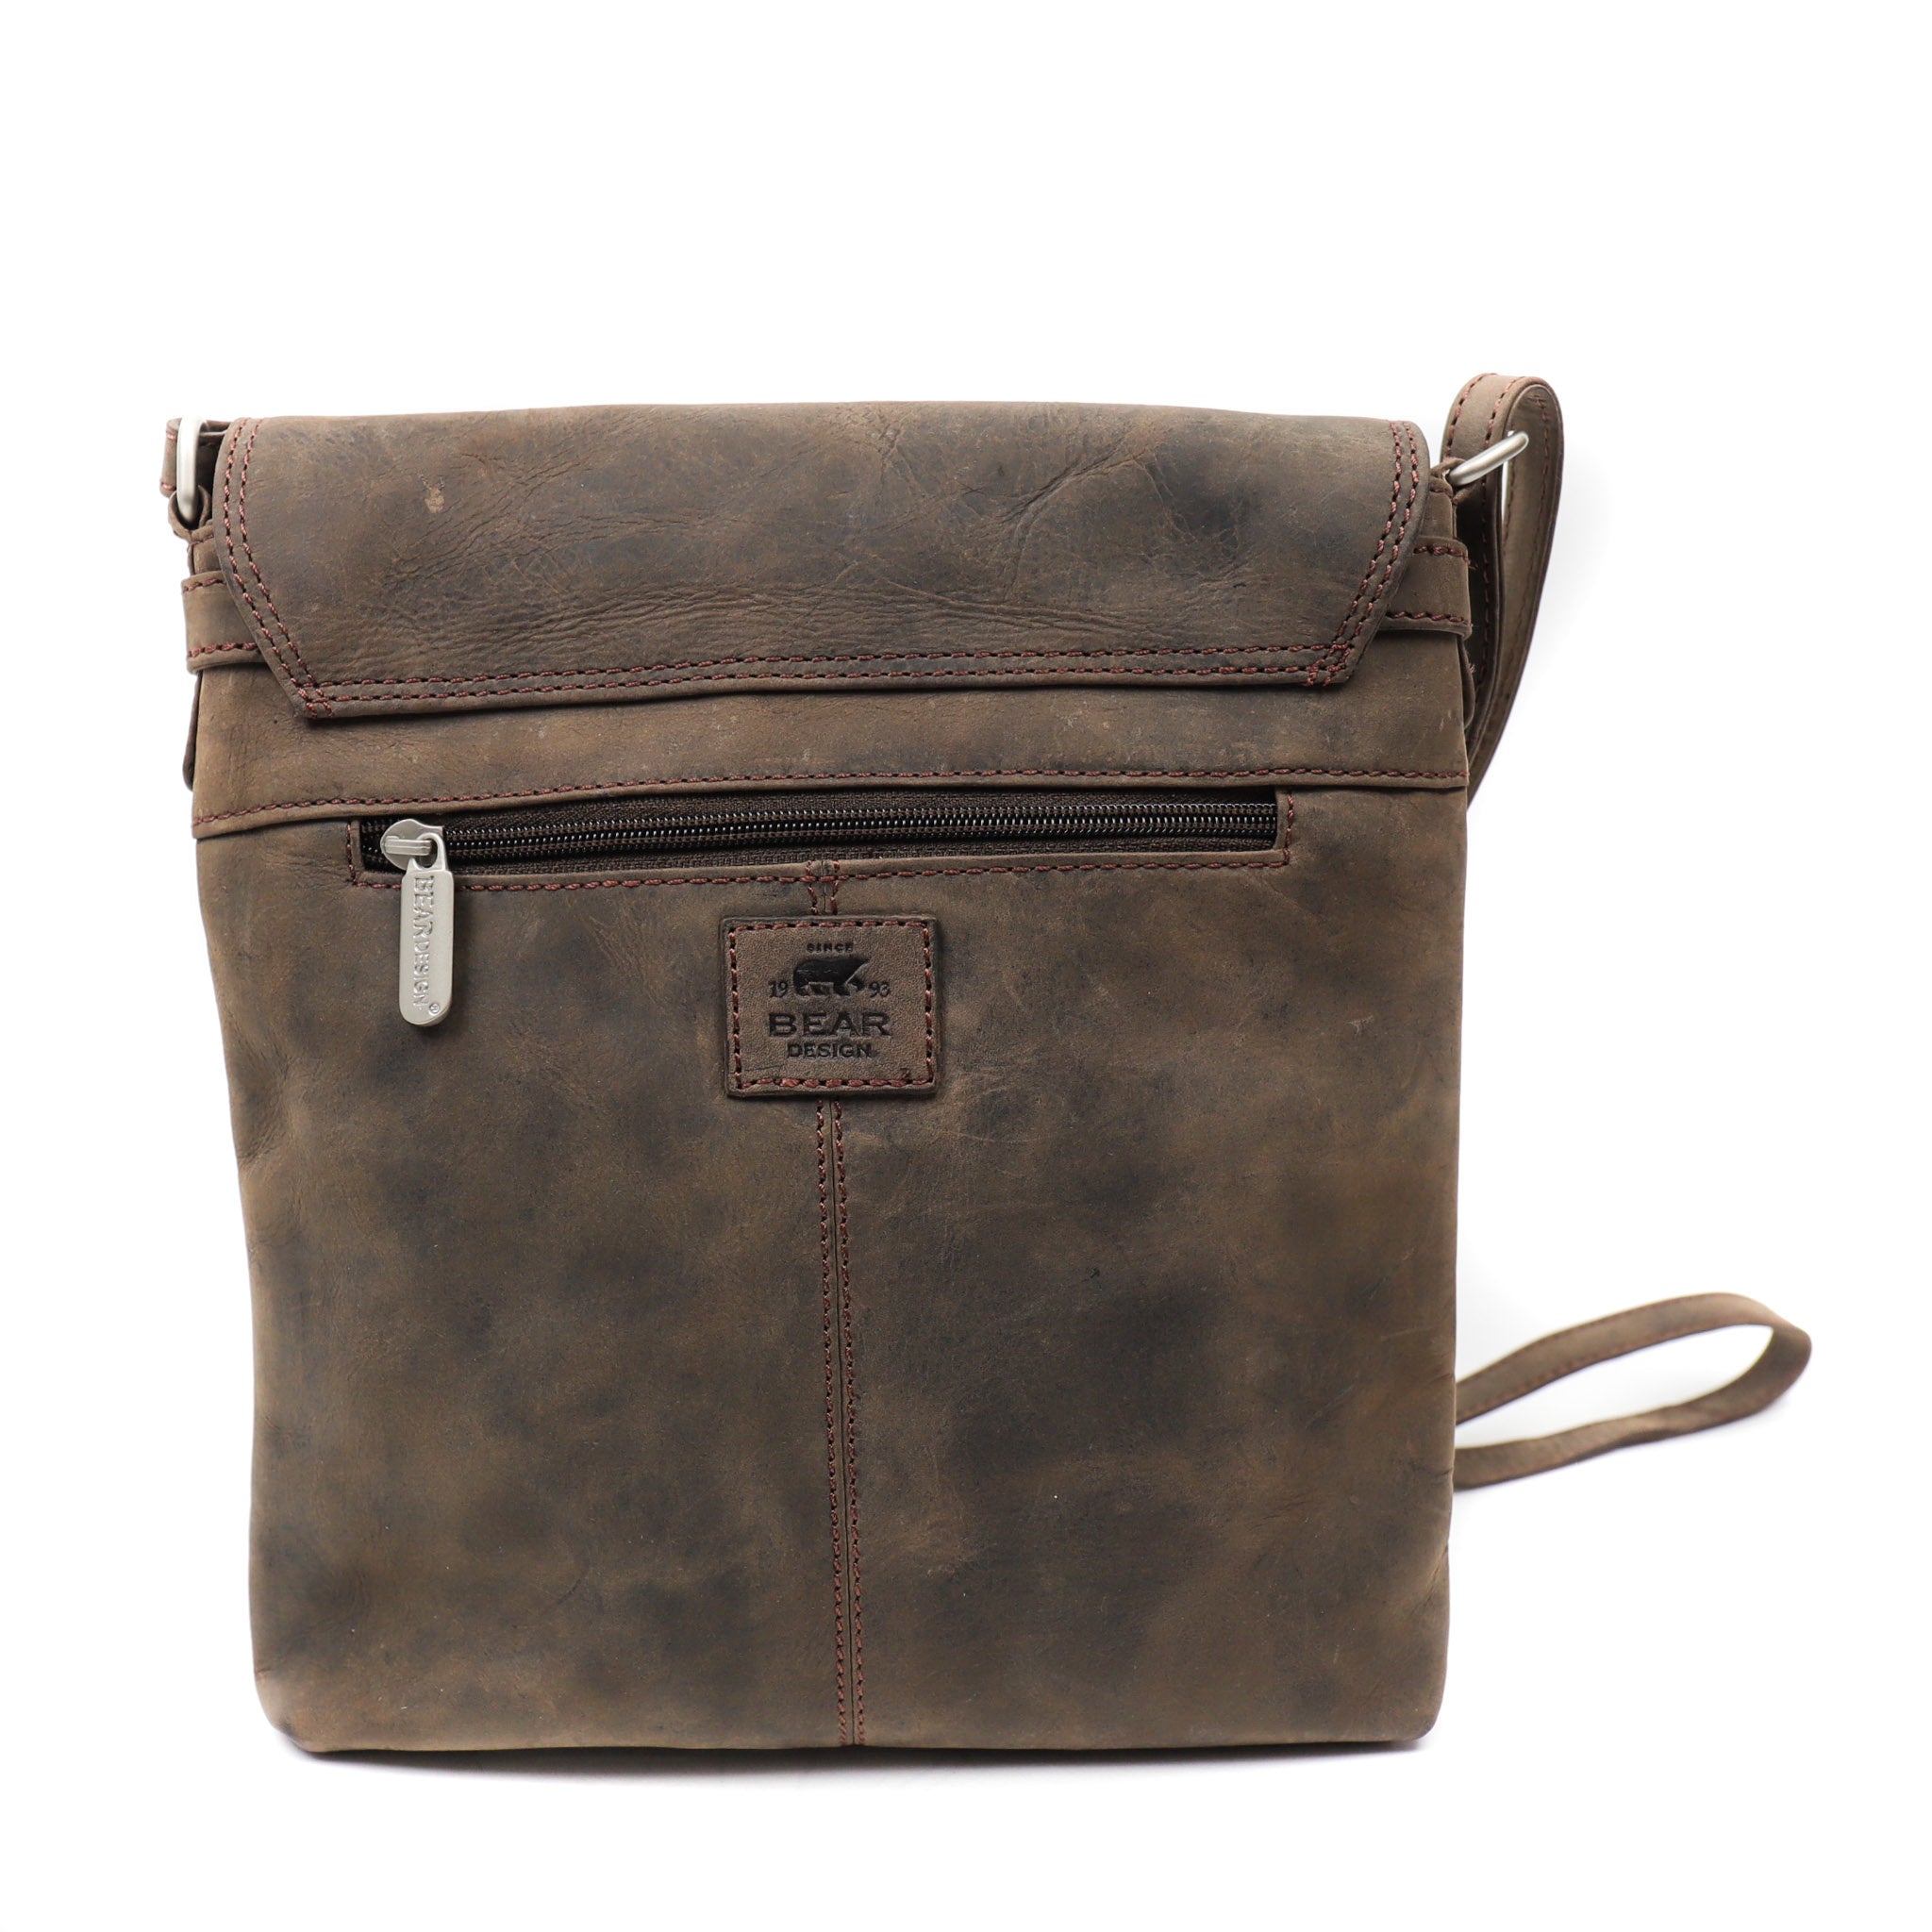 Shoulder bag 'Anita' brown - HD 3915